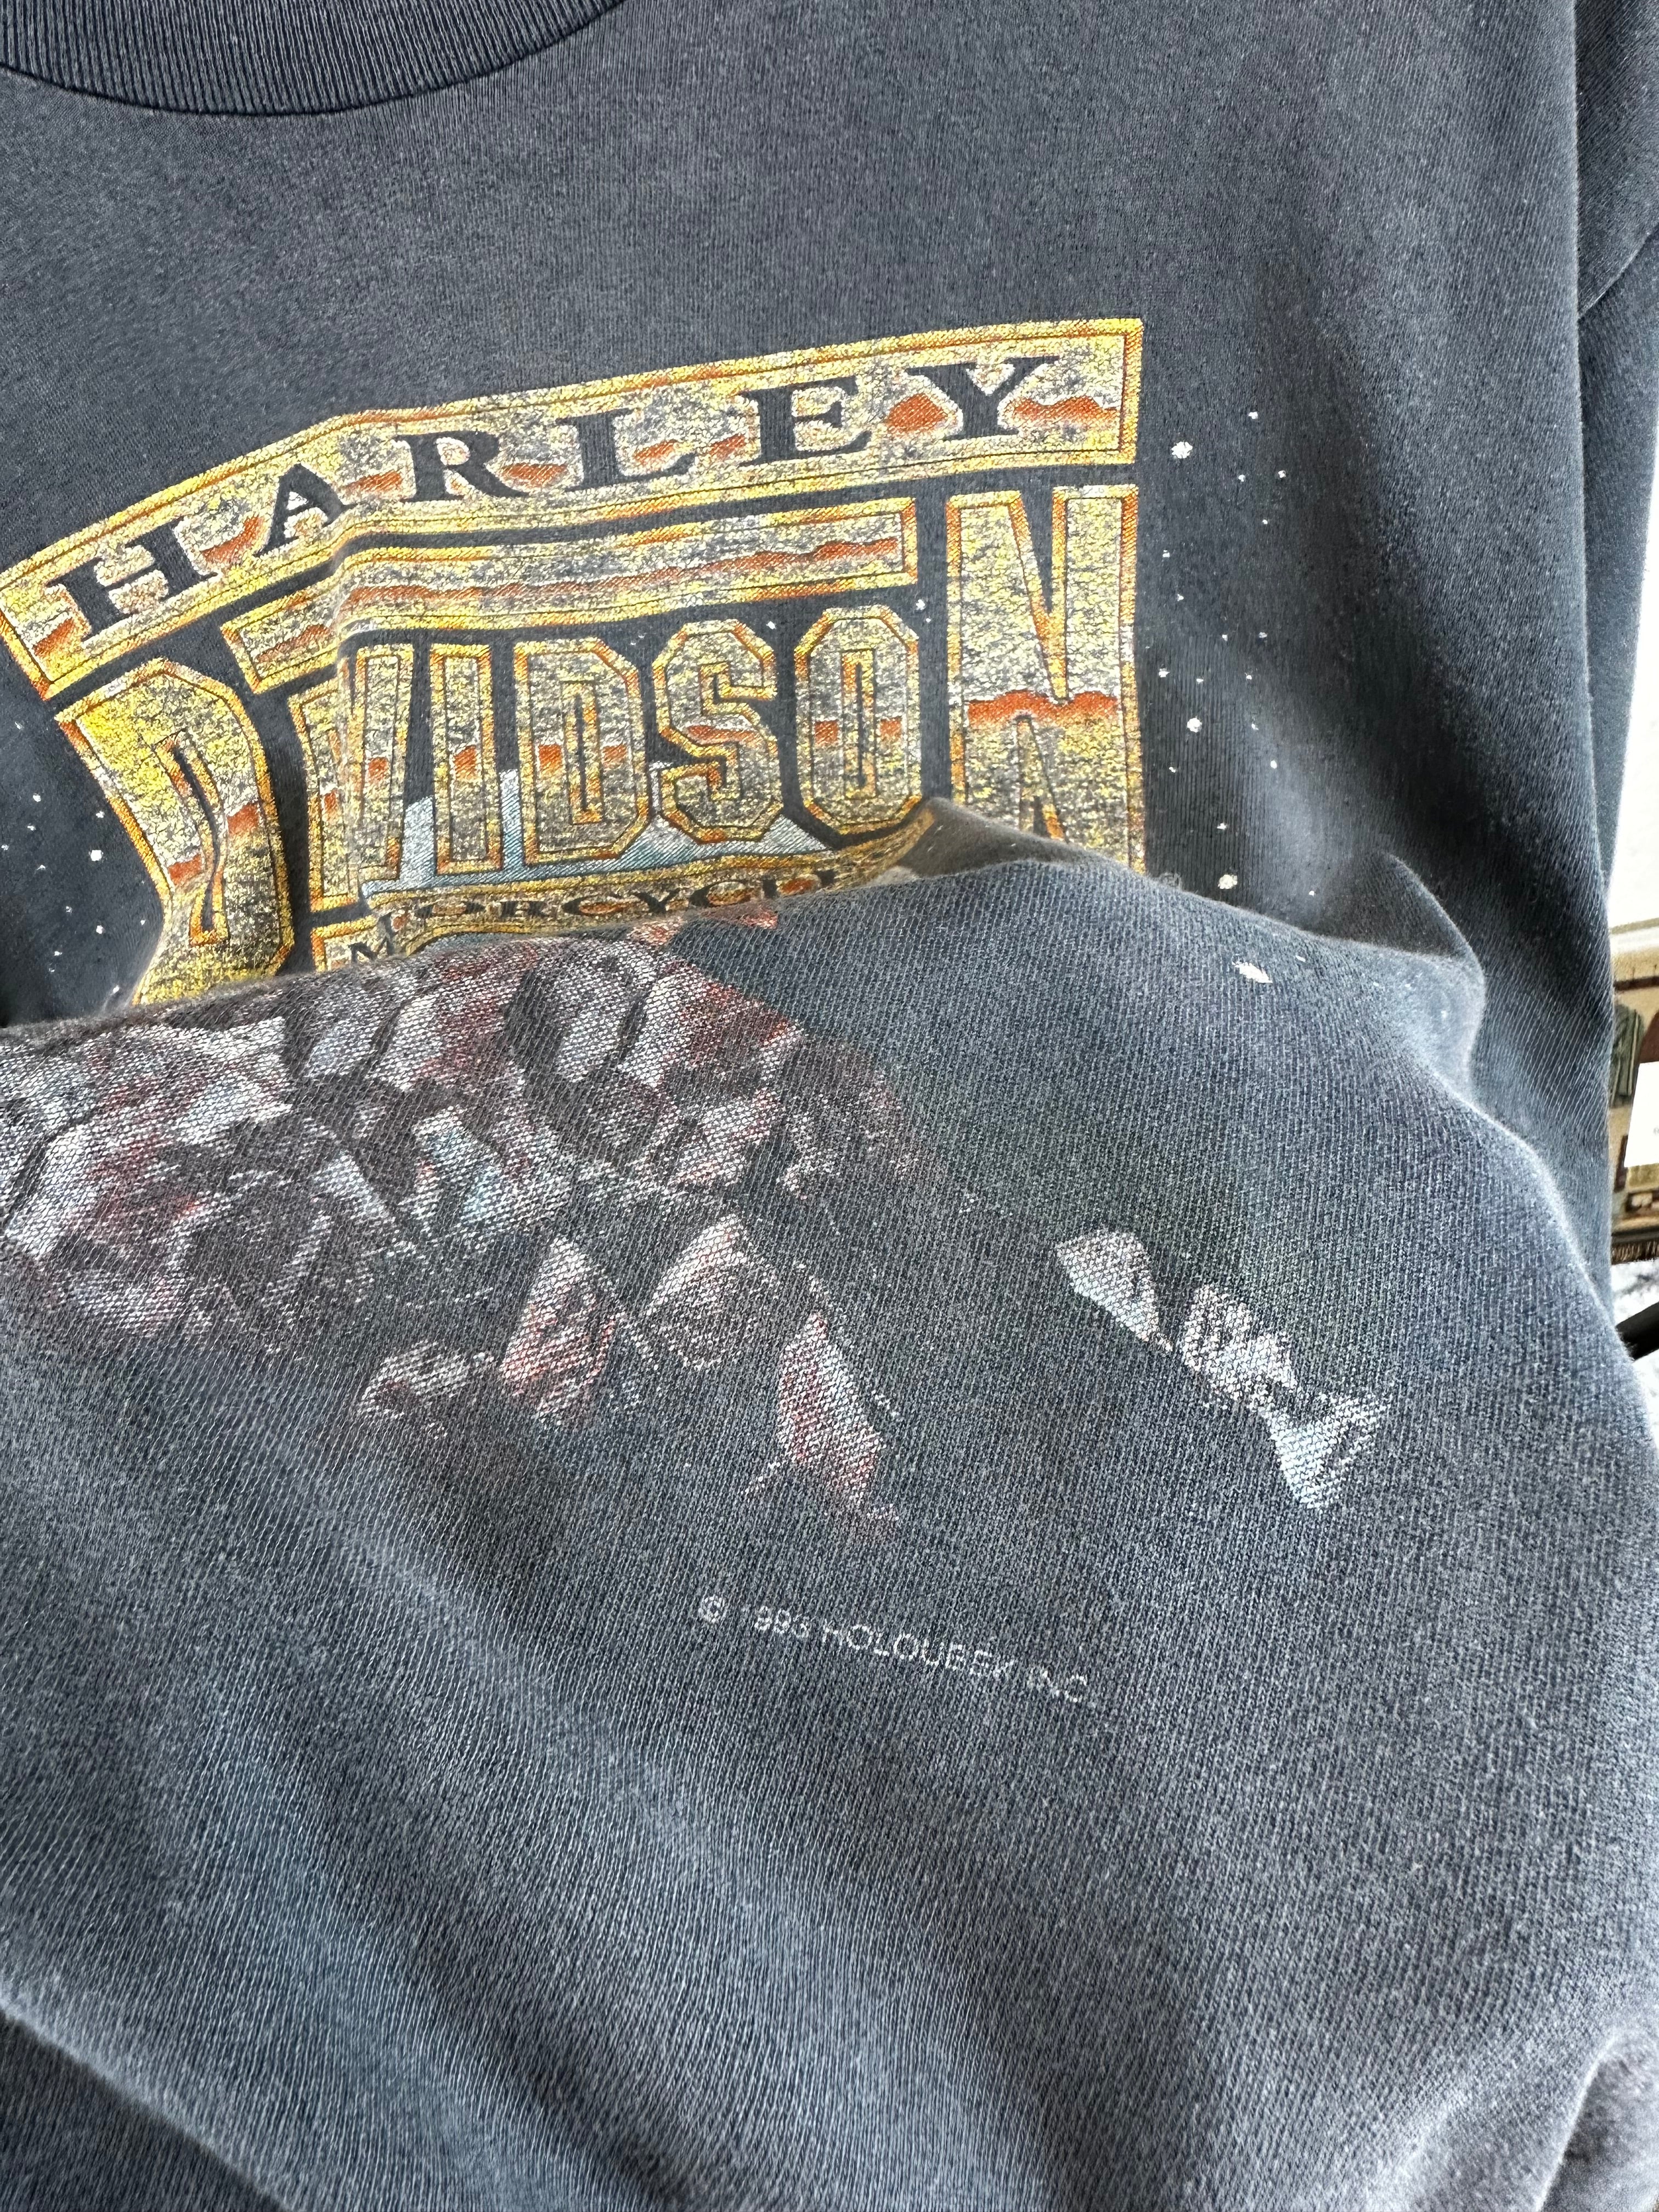 Vintage Harley Davidson 90s t-shirt - size L